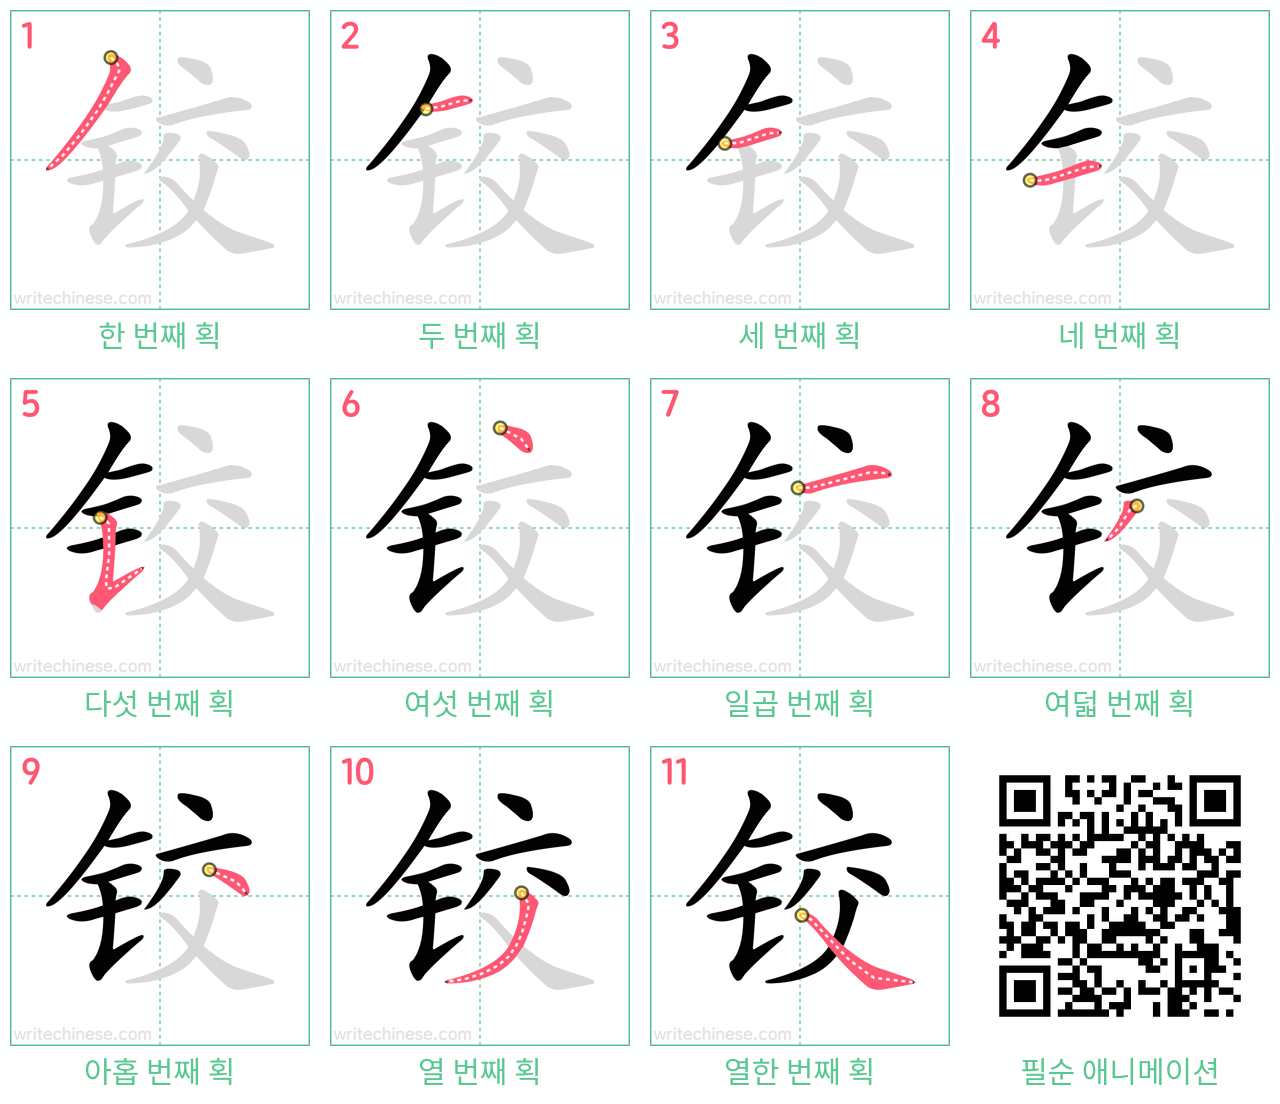 铰 step-by-step stroke order diagrams